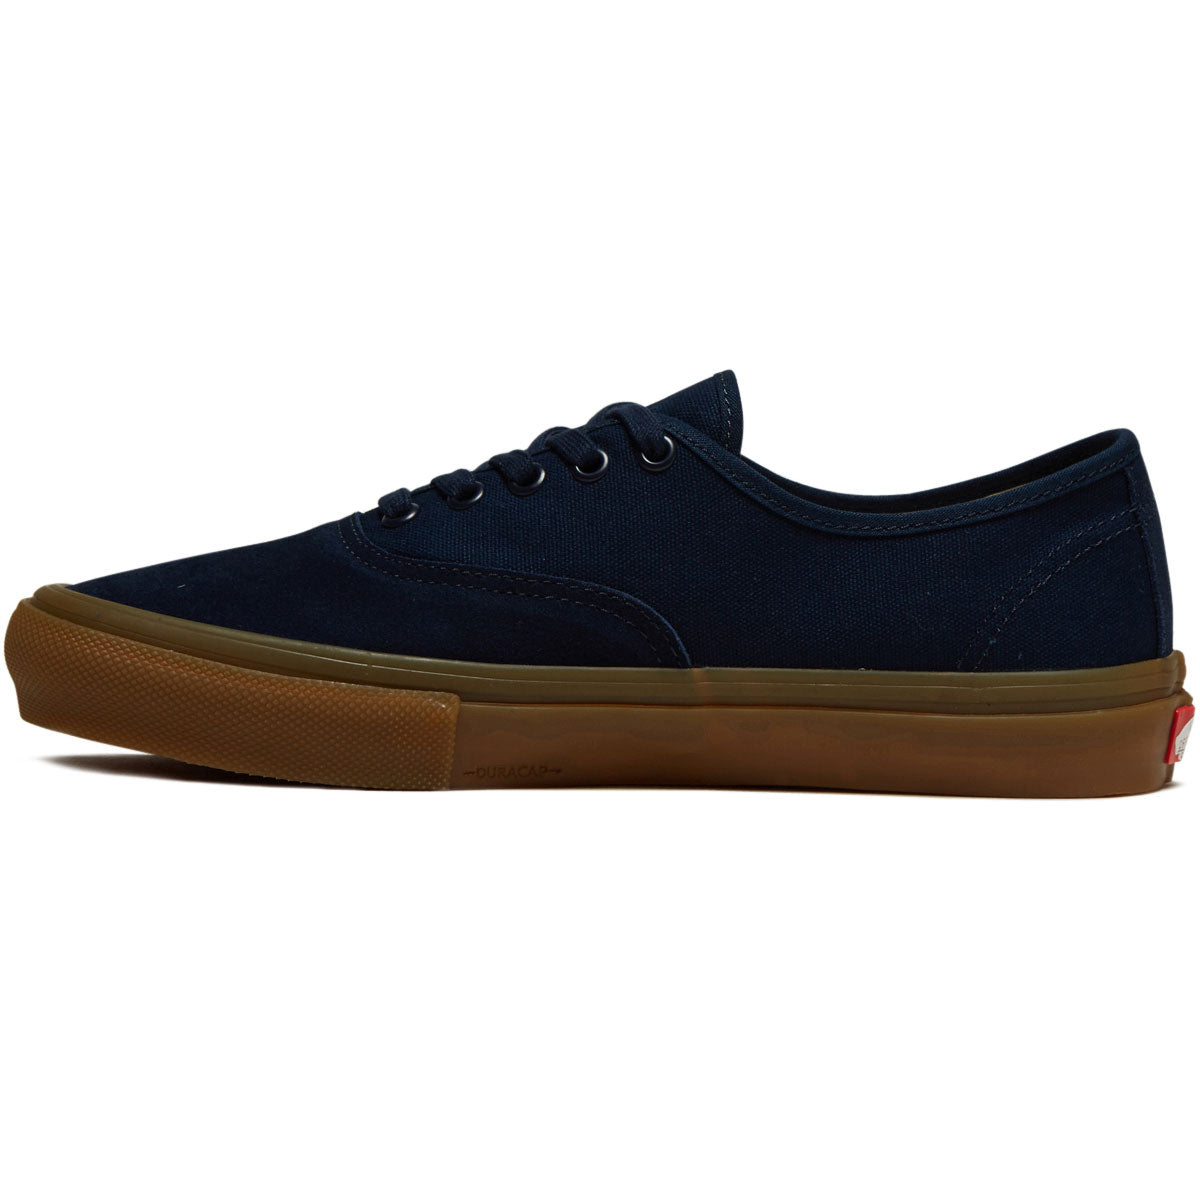 Vans Skate Authentic Shoes - Navy/Gum image 2